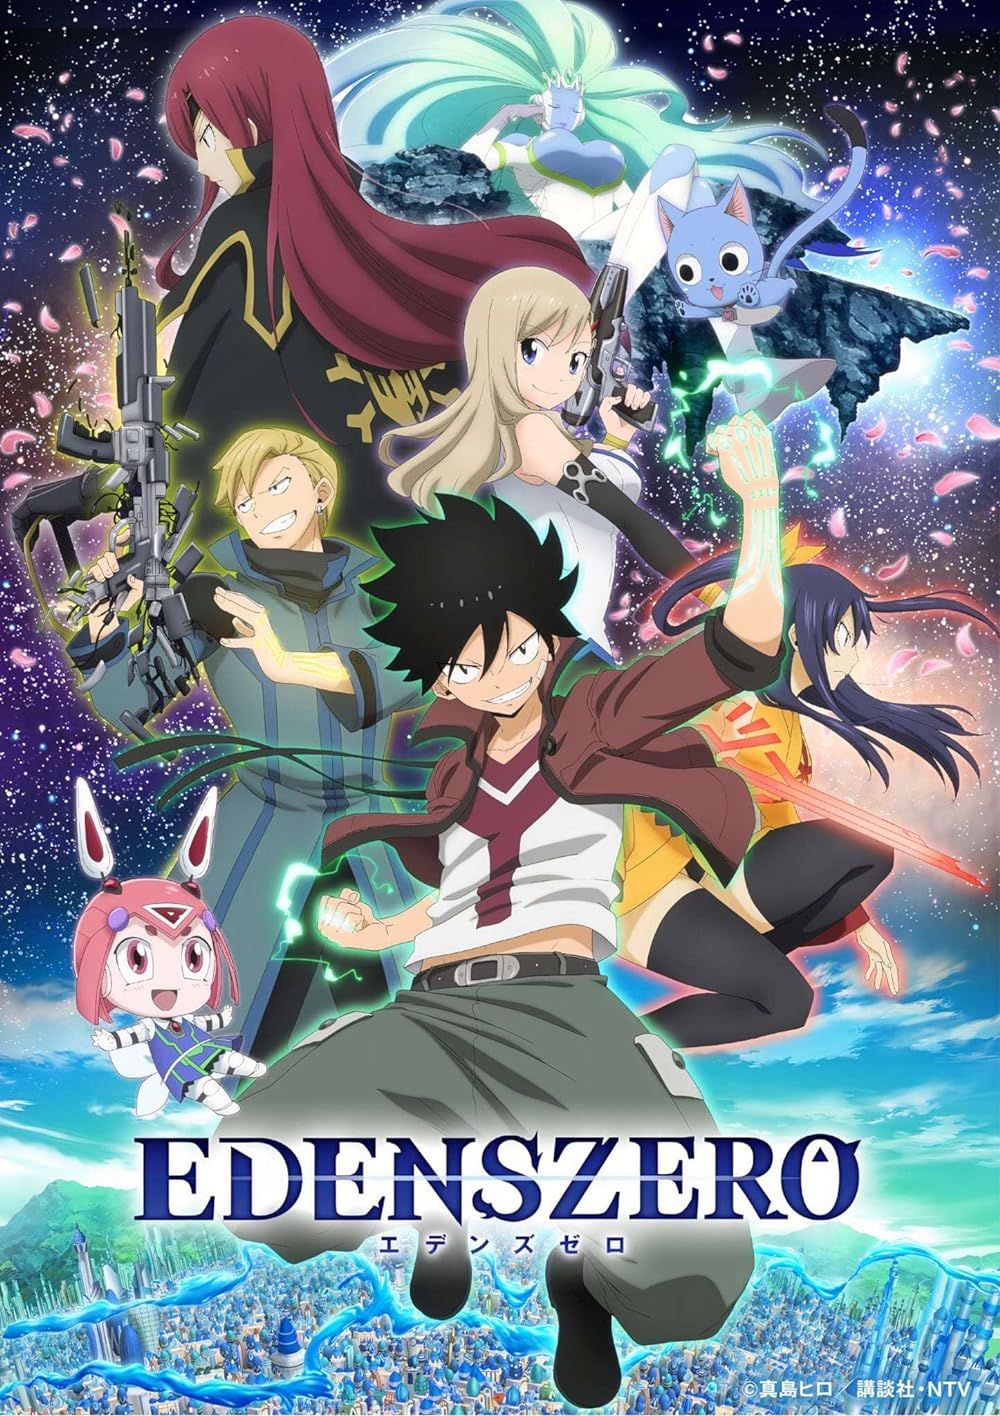 Edens Zero Official Poster